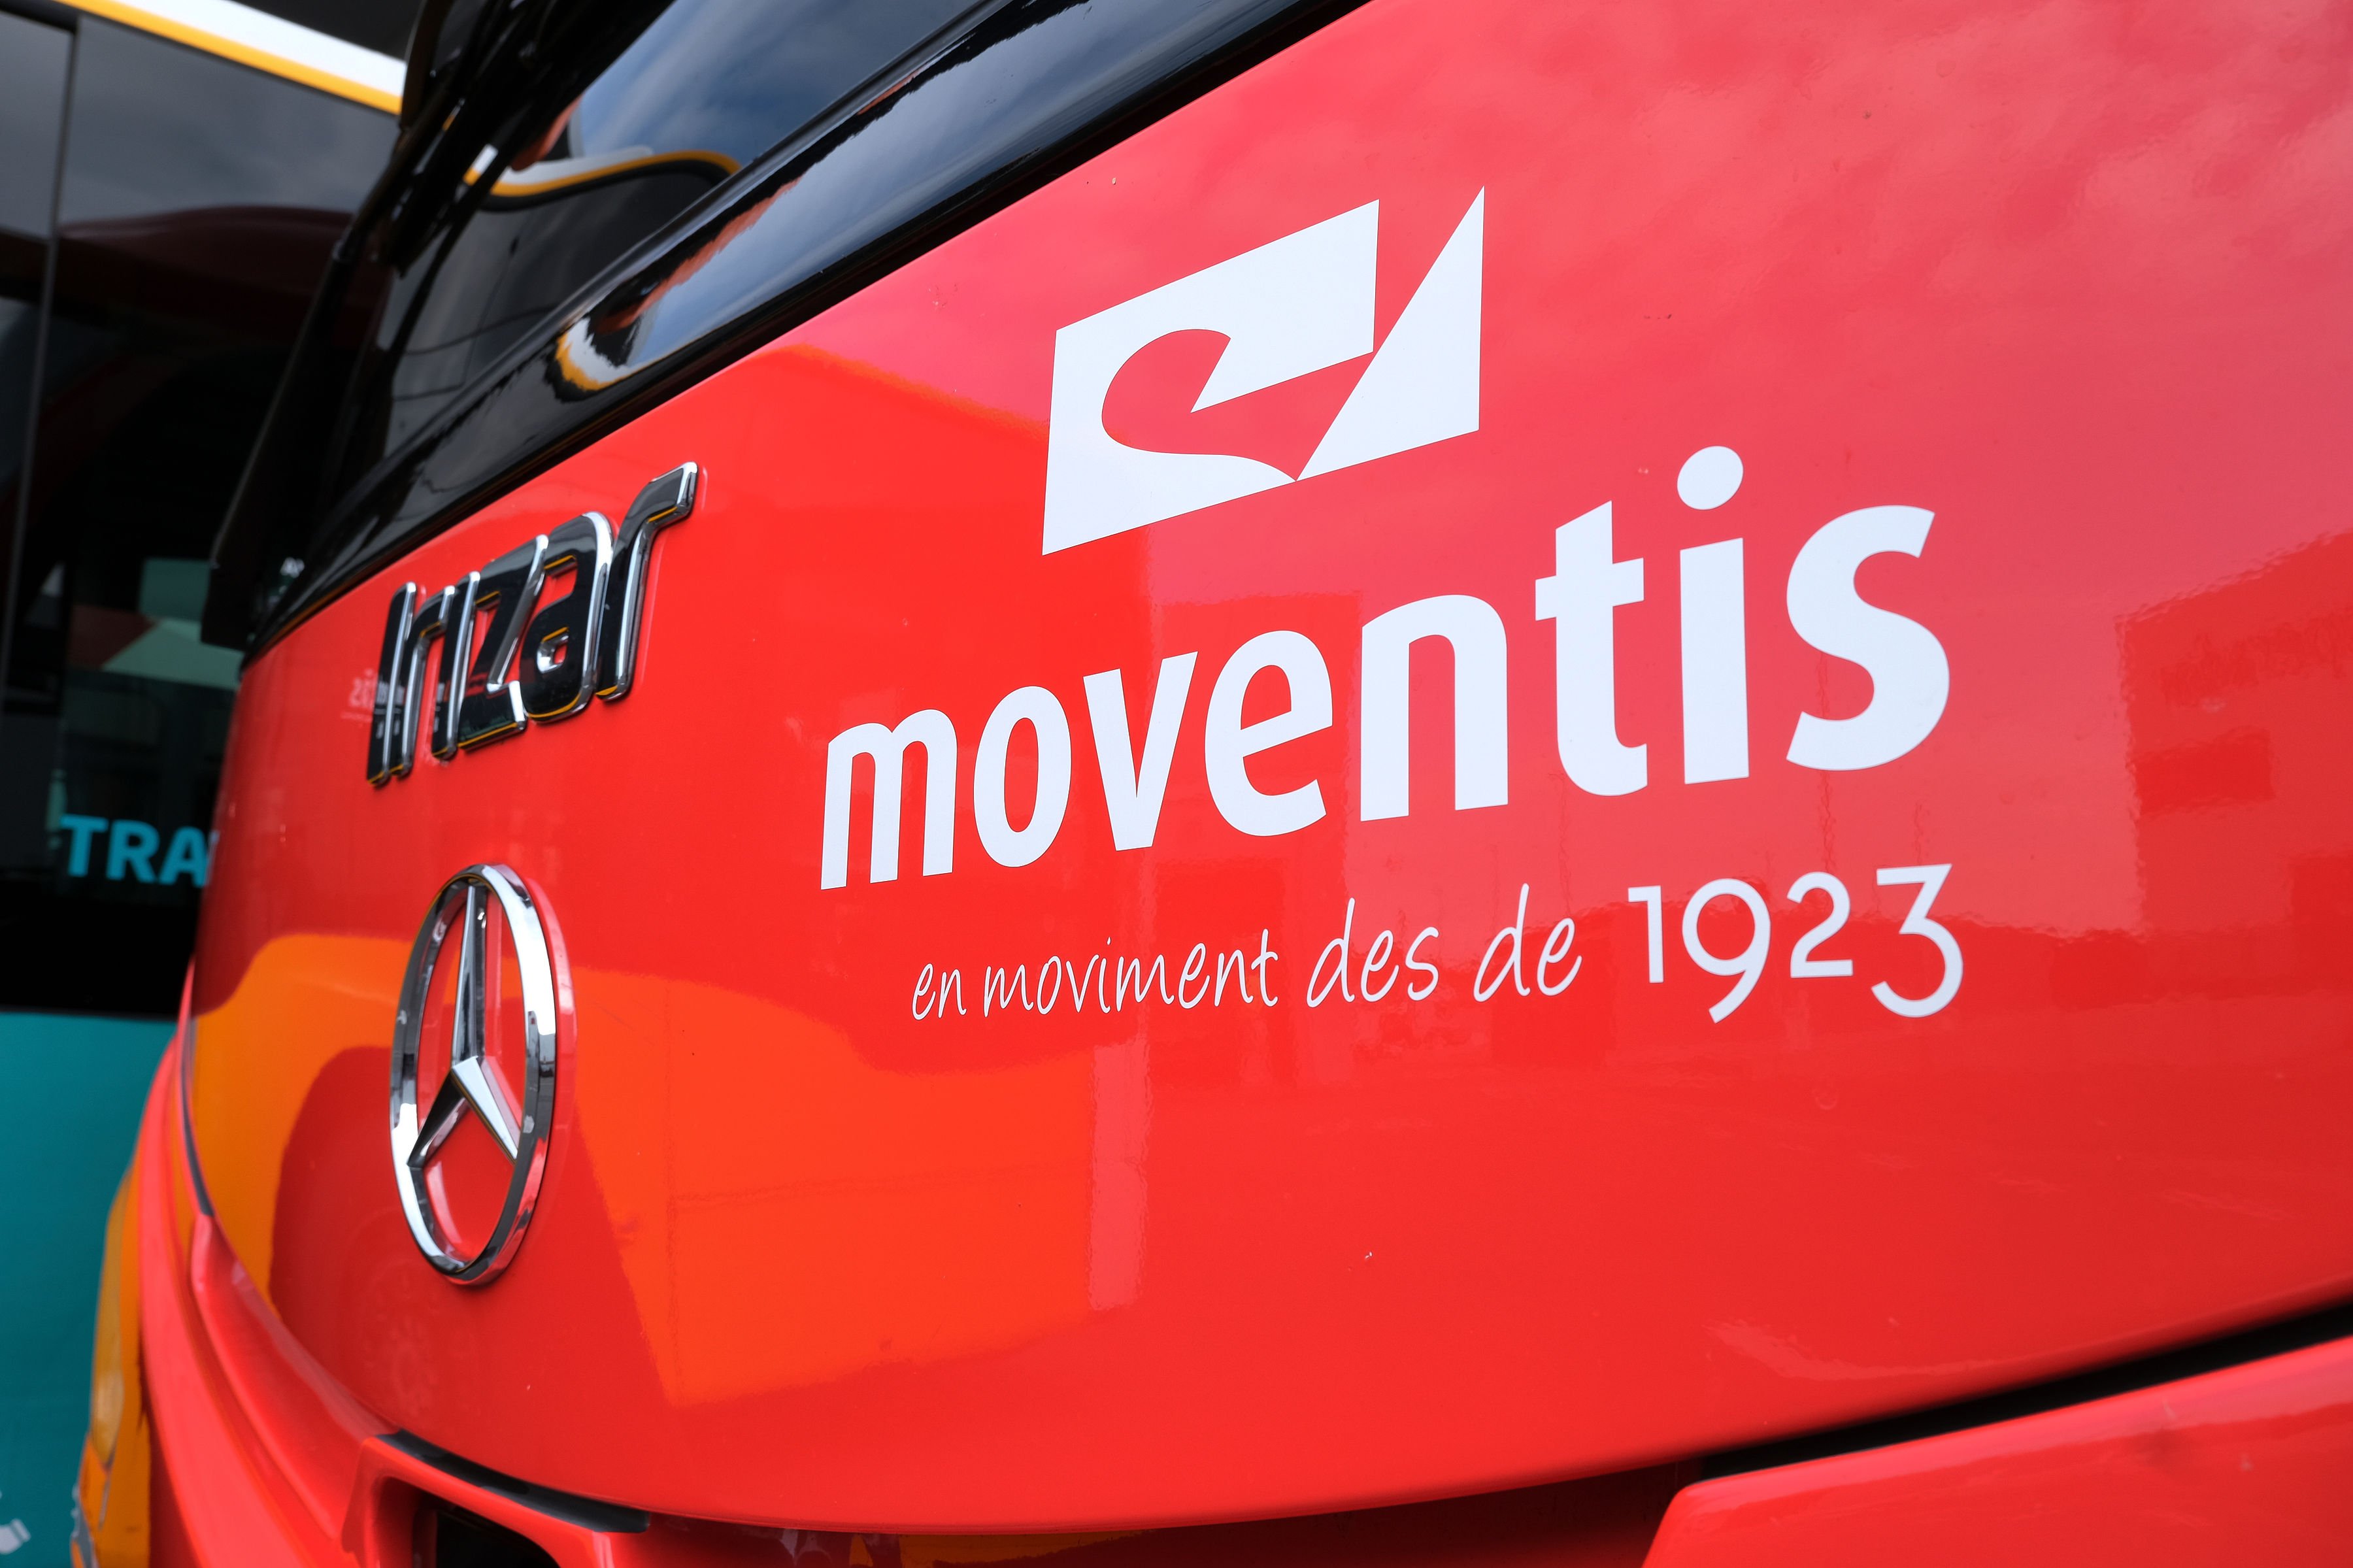 El grup Moventia opera en transport compartit amb la divisió Moventis | MOVENTIA